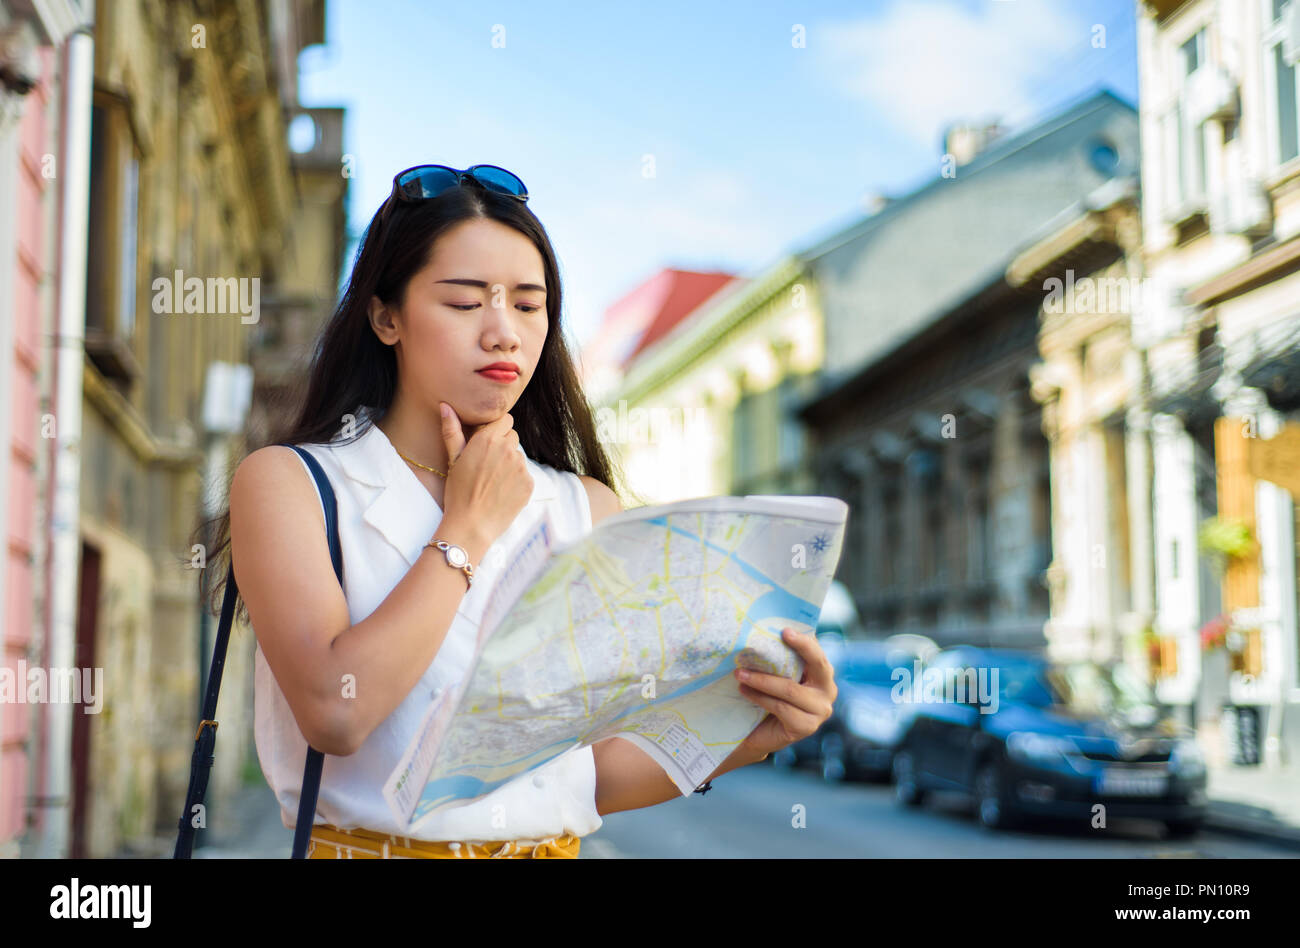 Asiatische Reisende mit einer Karte erkunden Europäische Architektur Straßen der Stadt Stockfoto